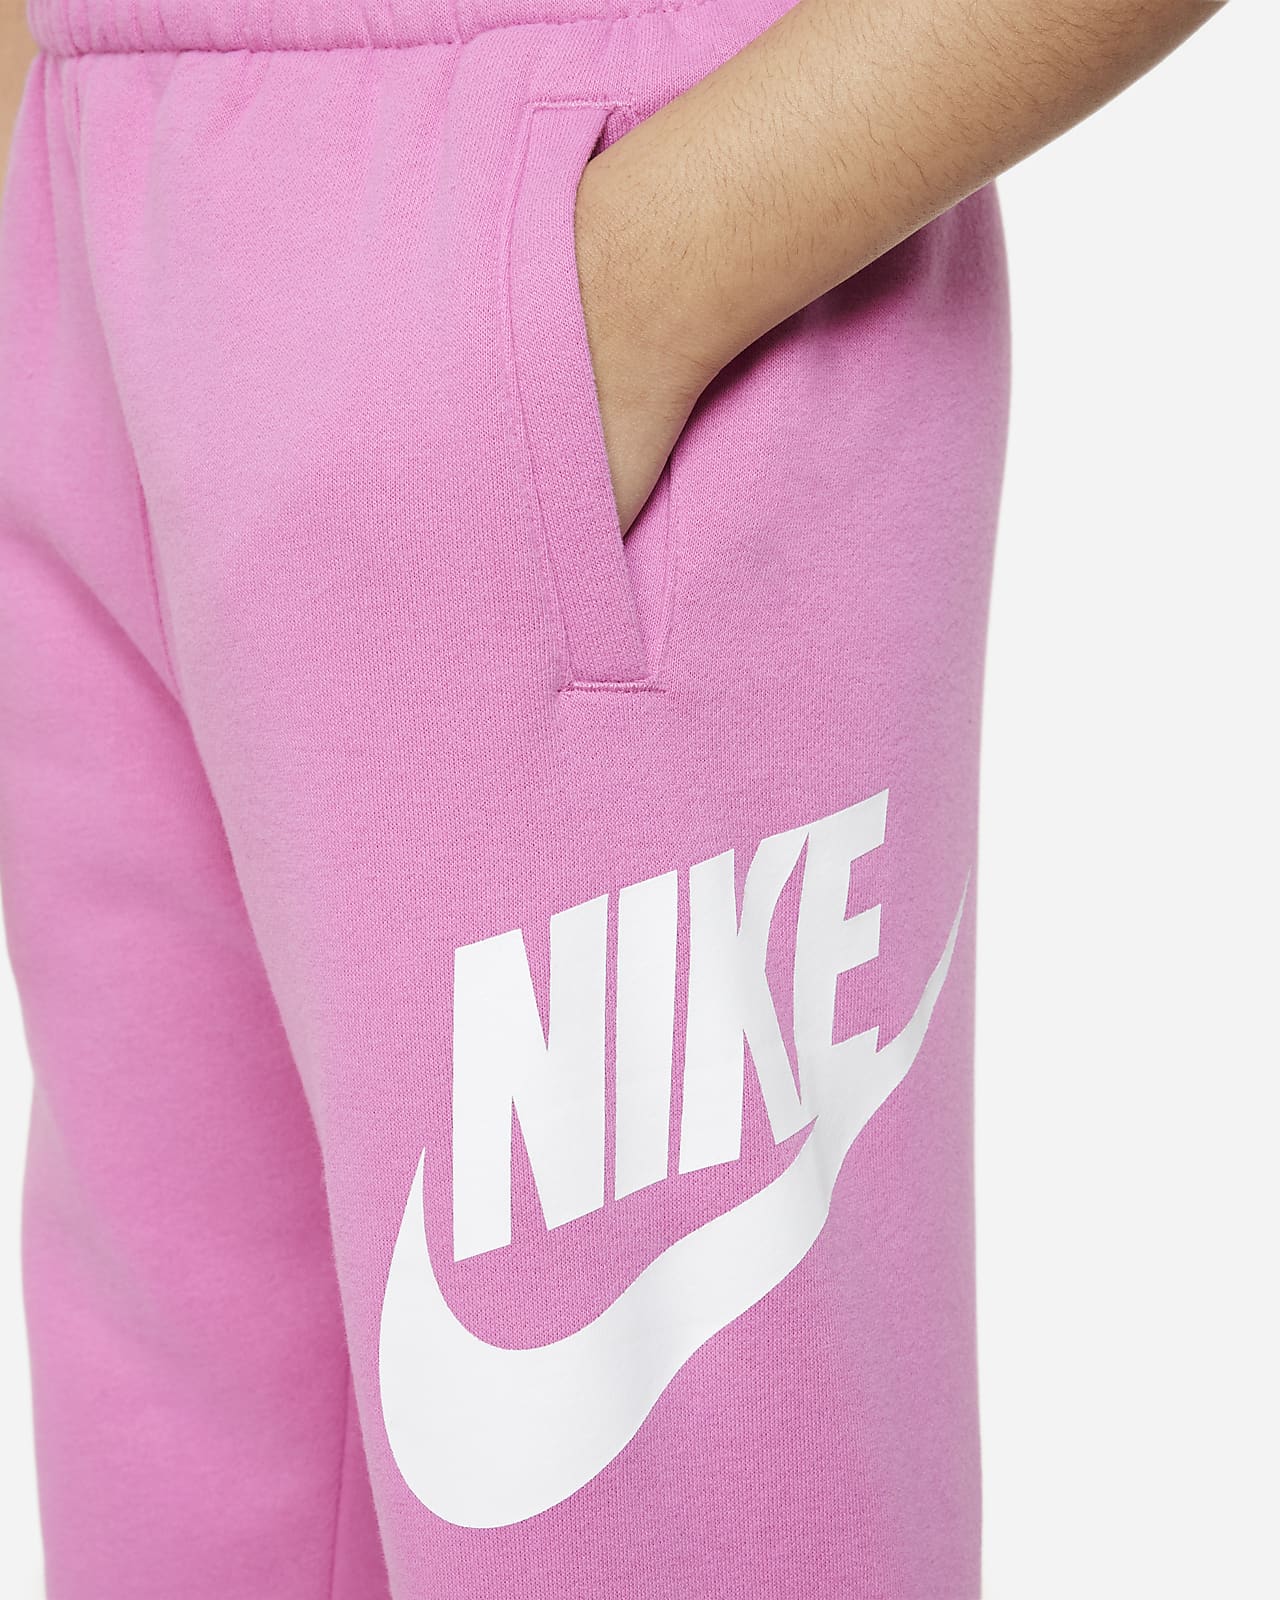 Nike Sportswear Club Fleece Joggers Little Kids Pants